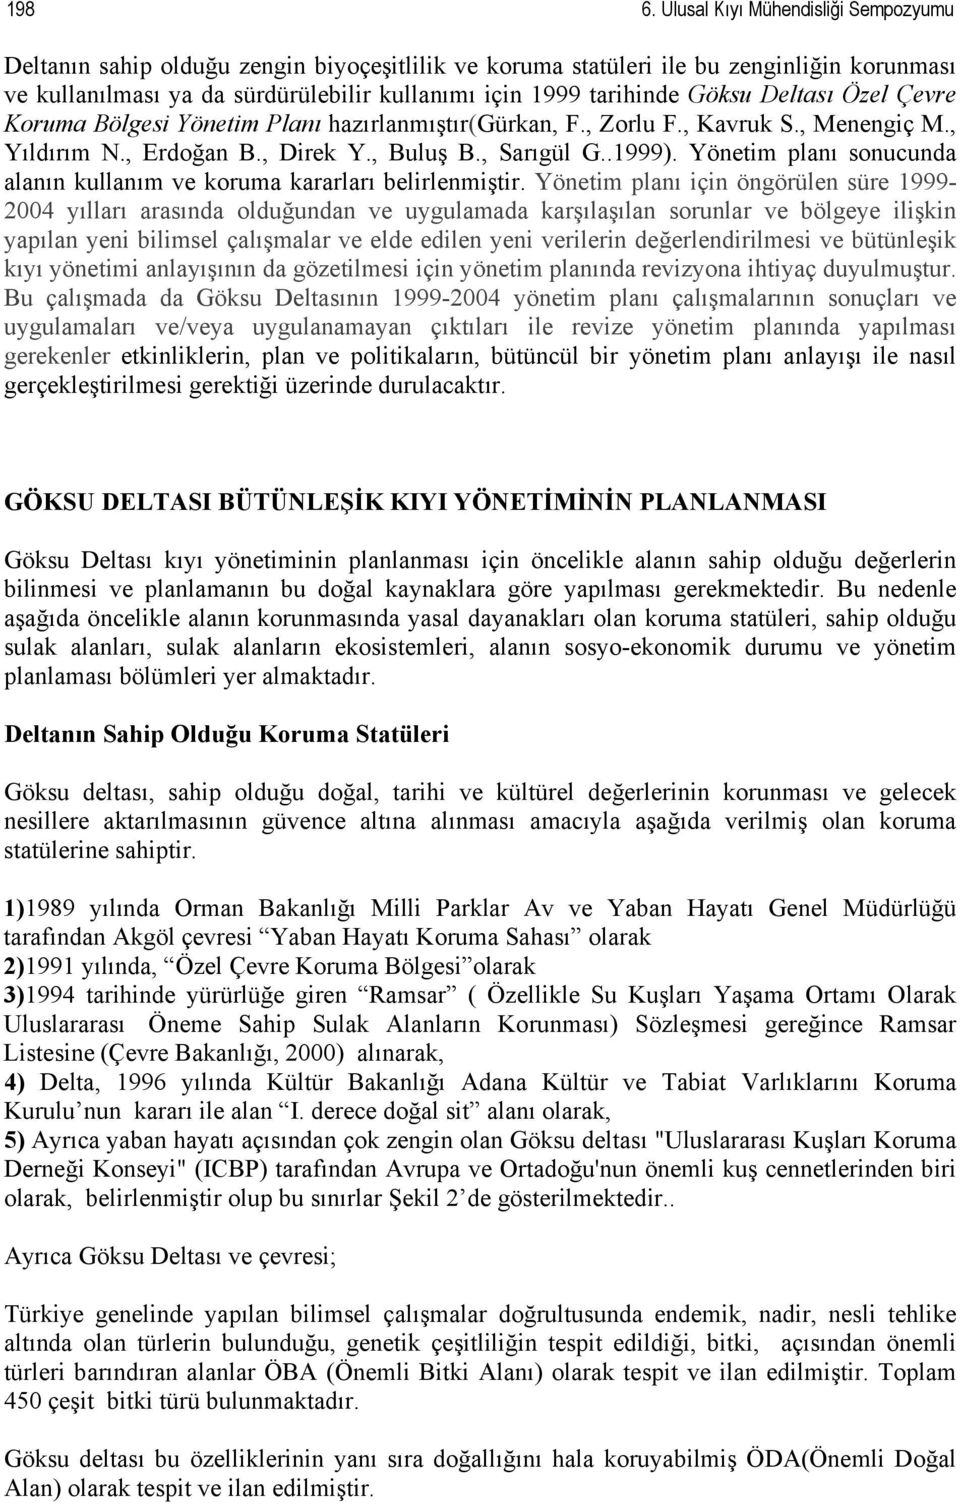 Göksu Deltası Özel Çevre Koruma Bölgesi Yönetim Planı hazırlanmıştır(gürkan, F., Zorlu F., Kavruk S., Menengiç M., Yıldırım N., Erdoğan B., Direk Y., Buluş B., Sarıgül G..1999).